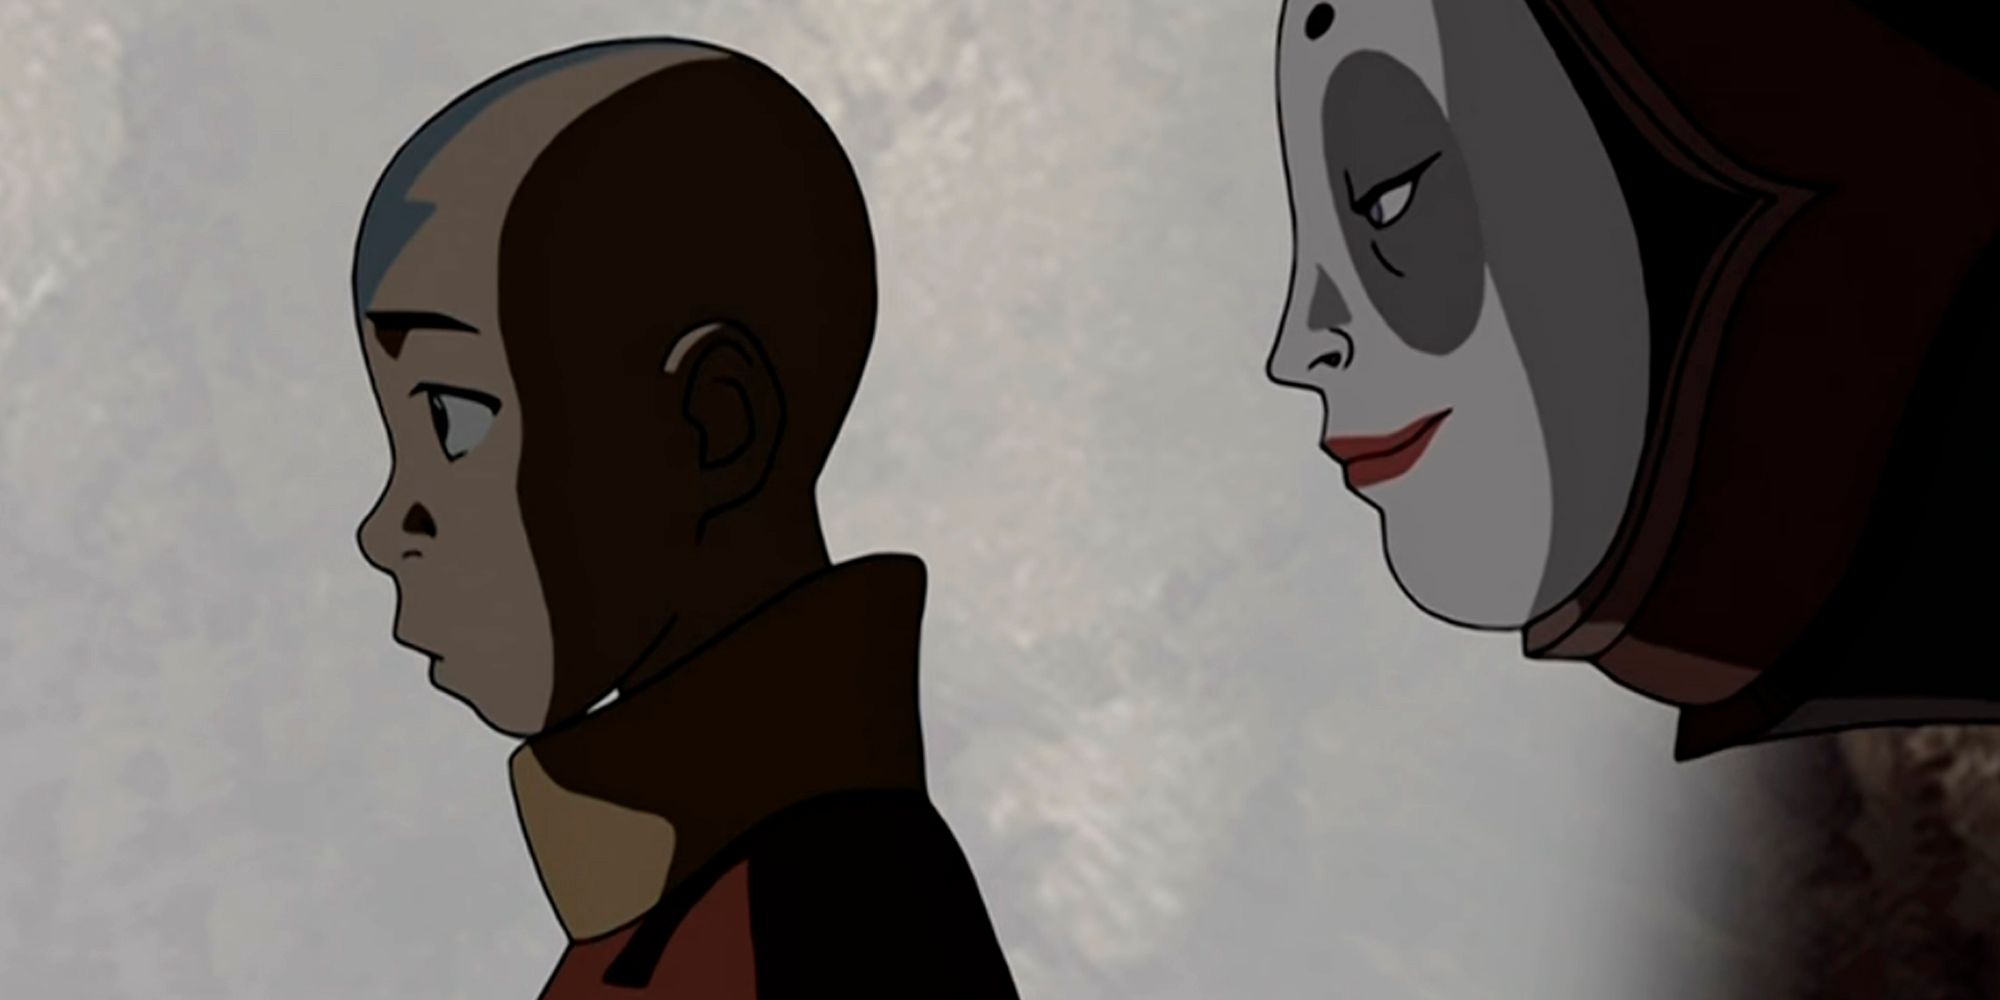 Koh usando um rosto feminino pintado atrás de Aang na animação Avatar: The Last Airbender